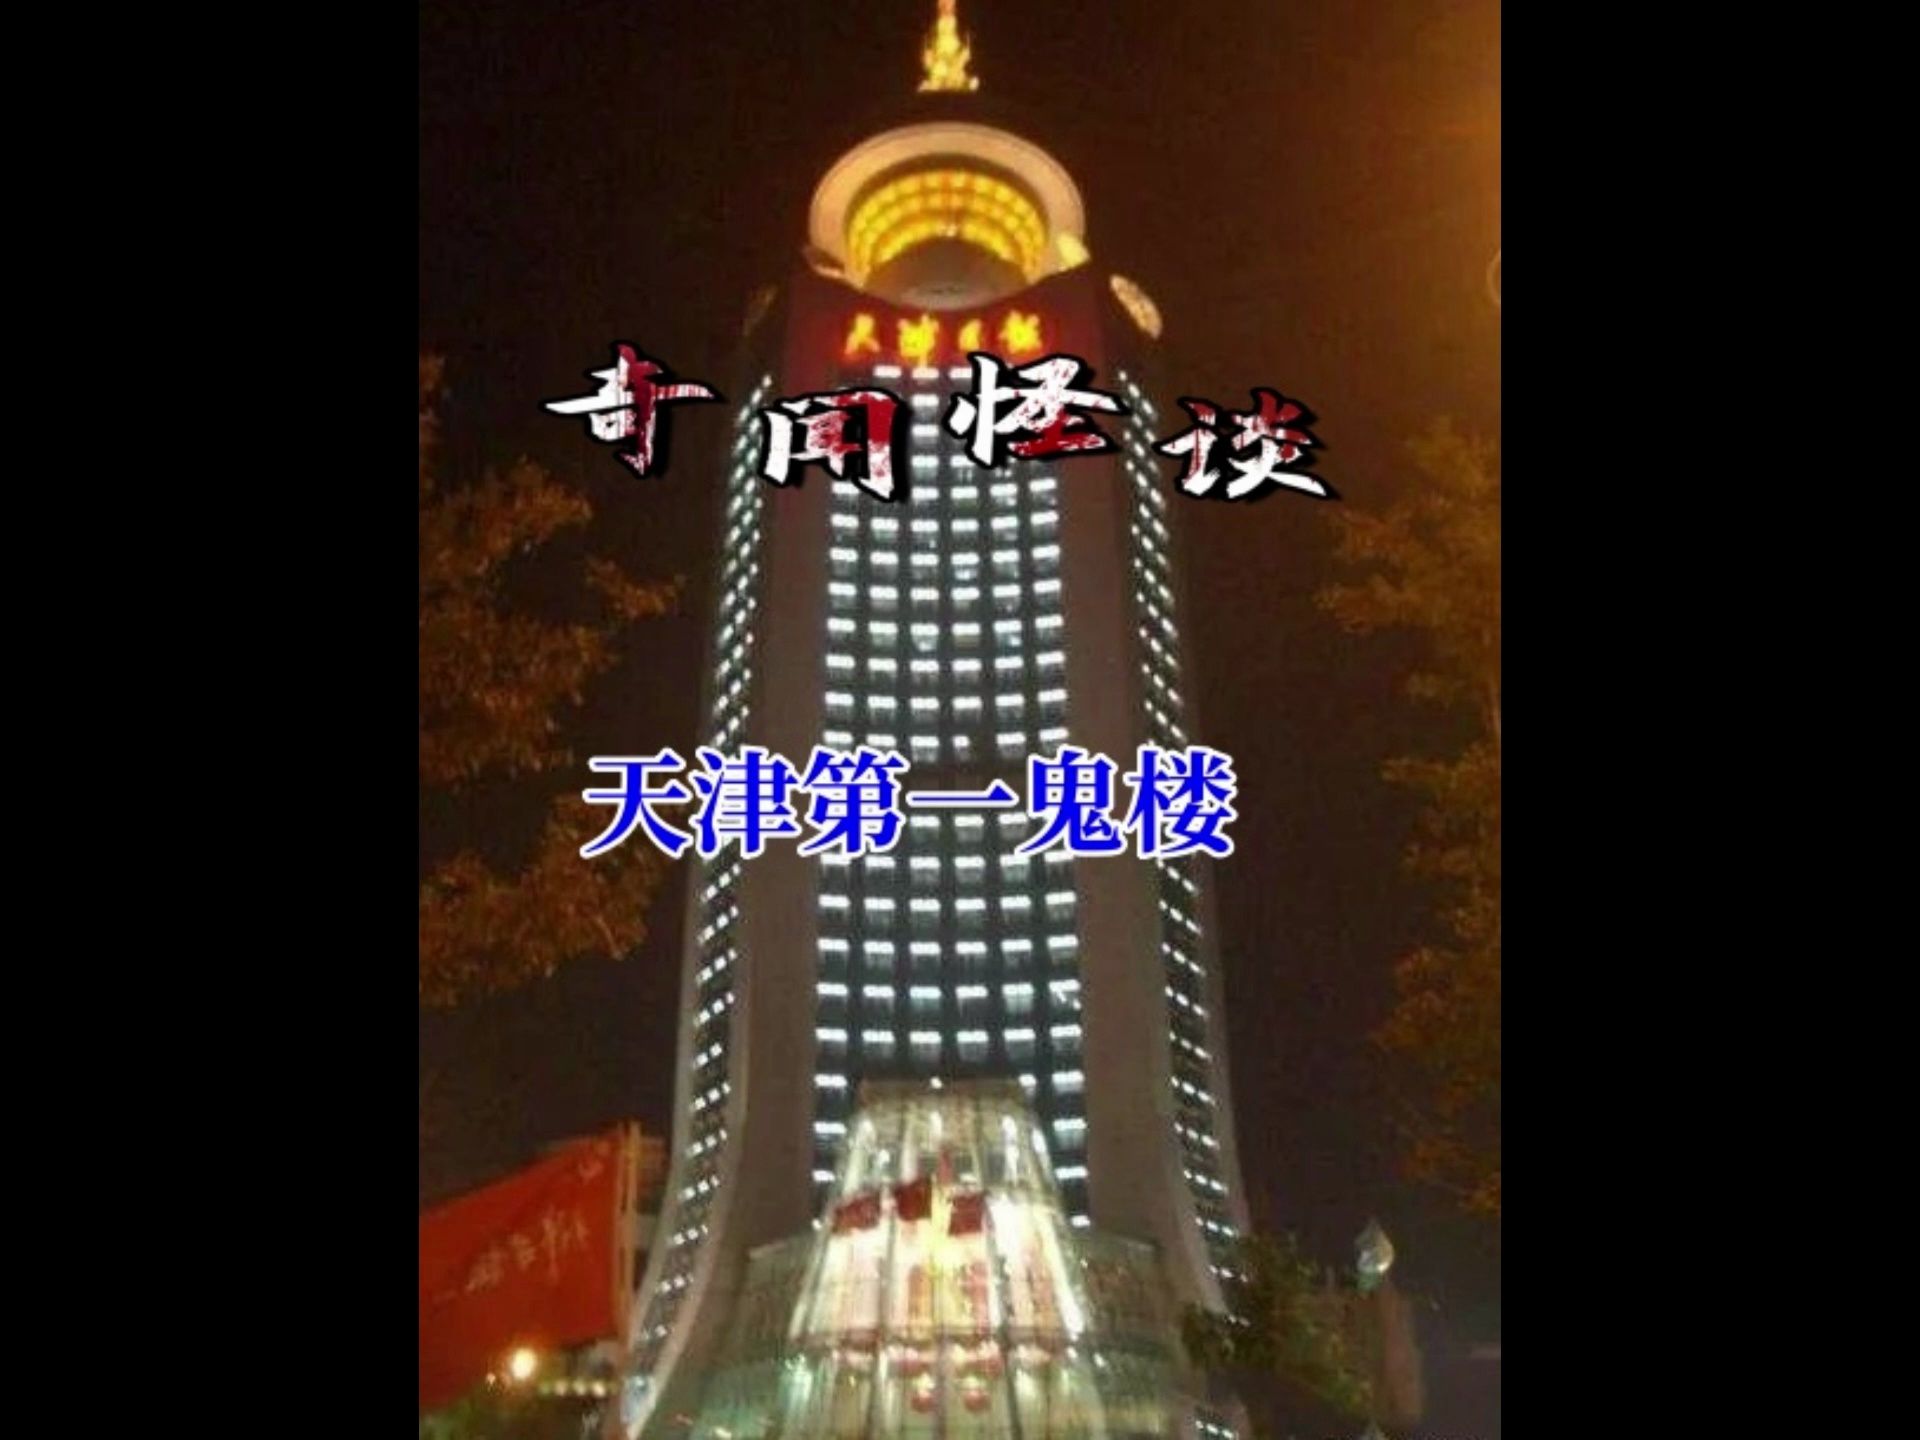 天津日报大厦14楼照片图片